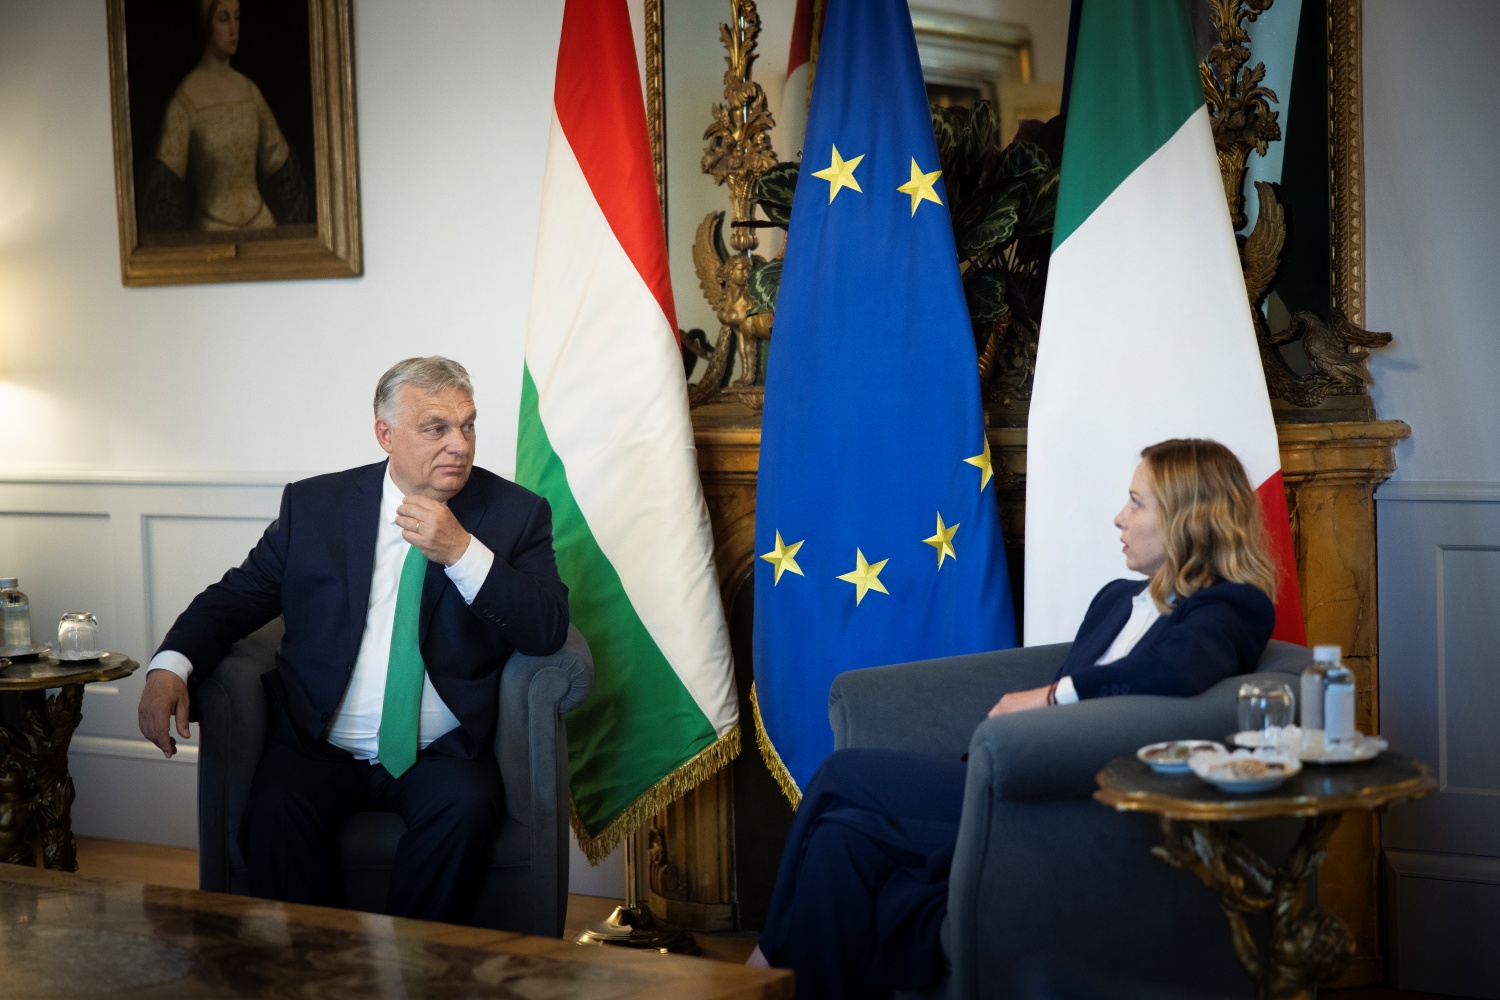 Viktor Orbán Discusses EU Presidency Program with Italian PM in Rome